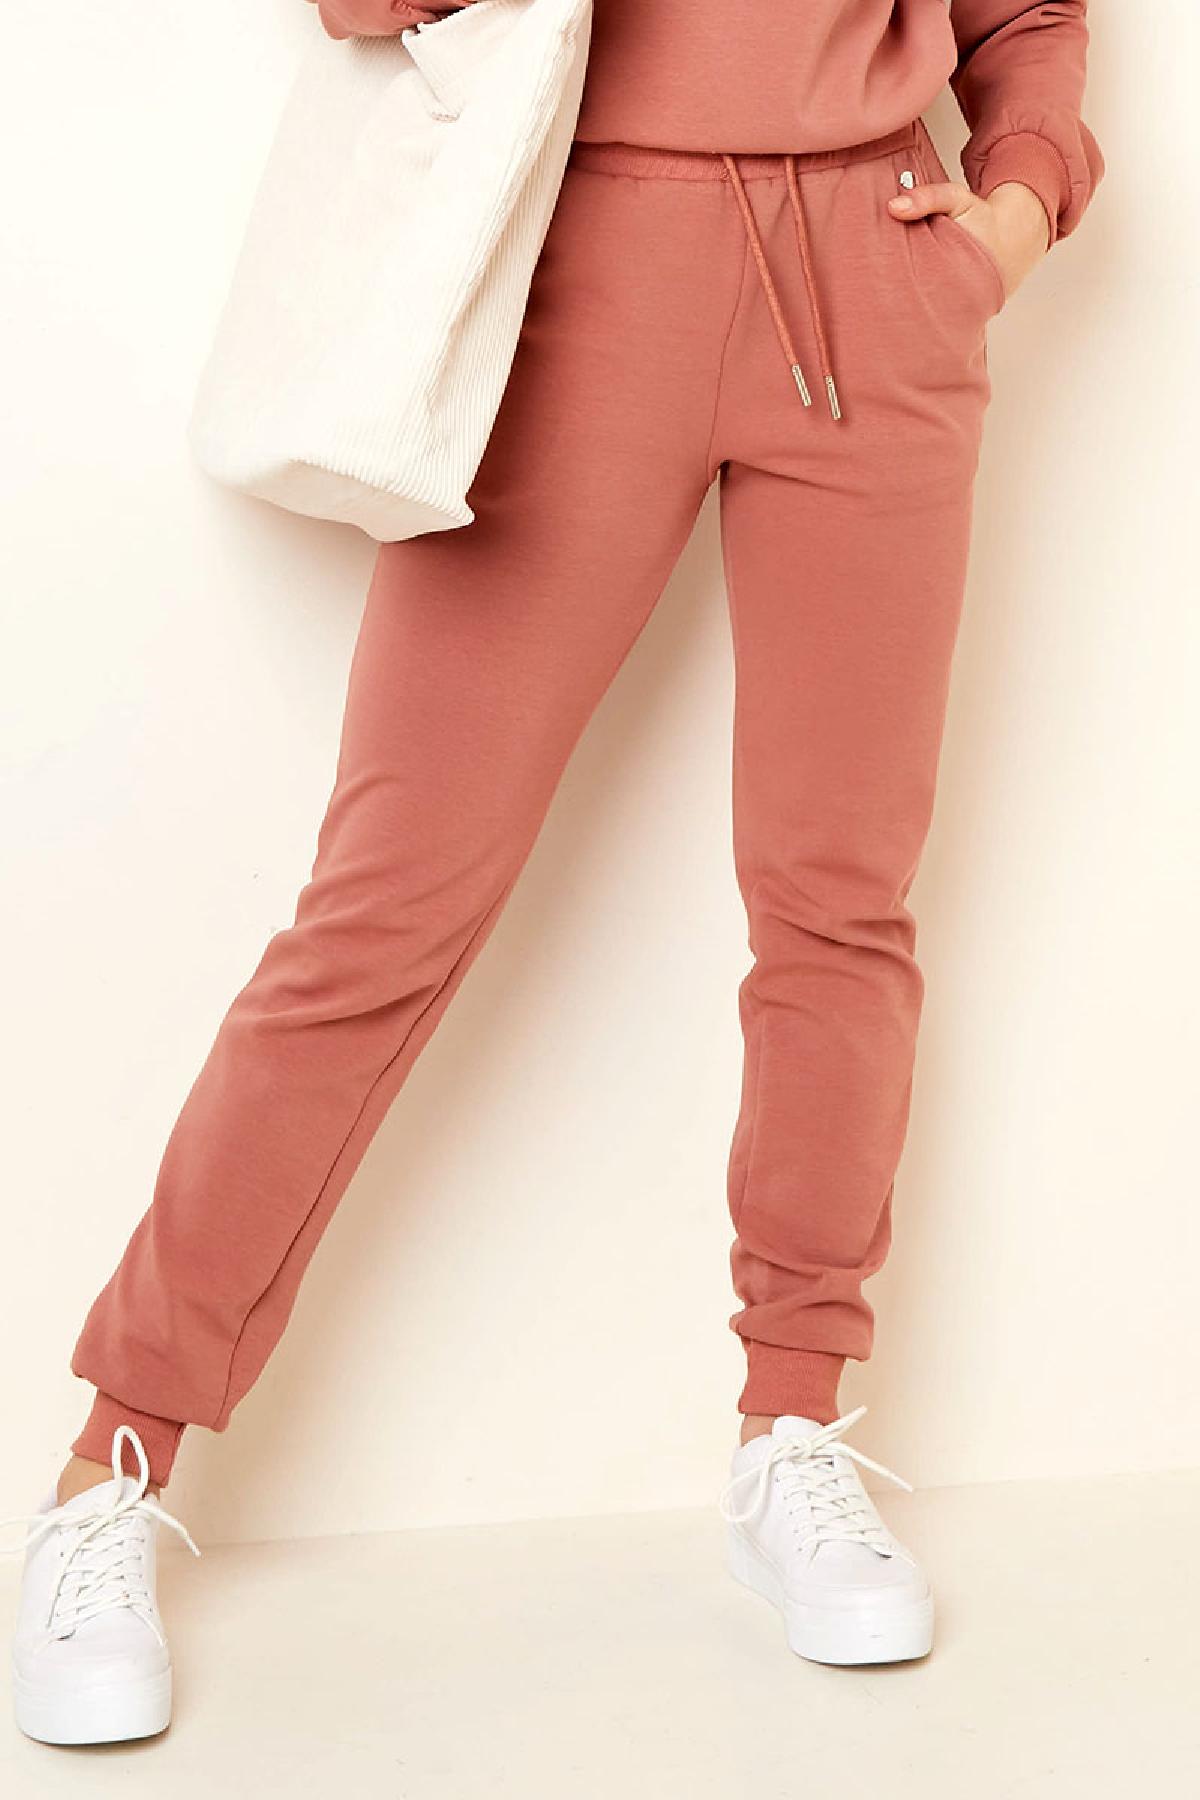 Pantalones cómodos estilo casual Naranja XL h5 Imagen2